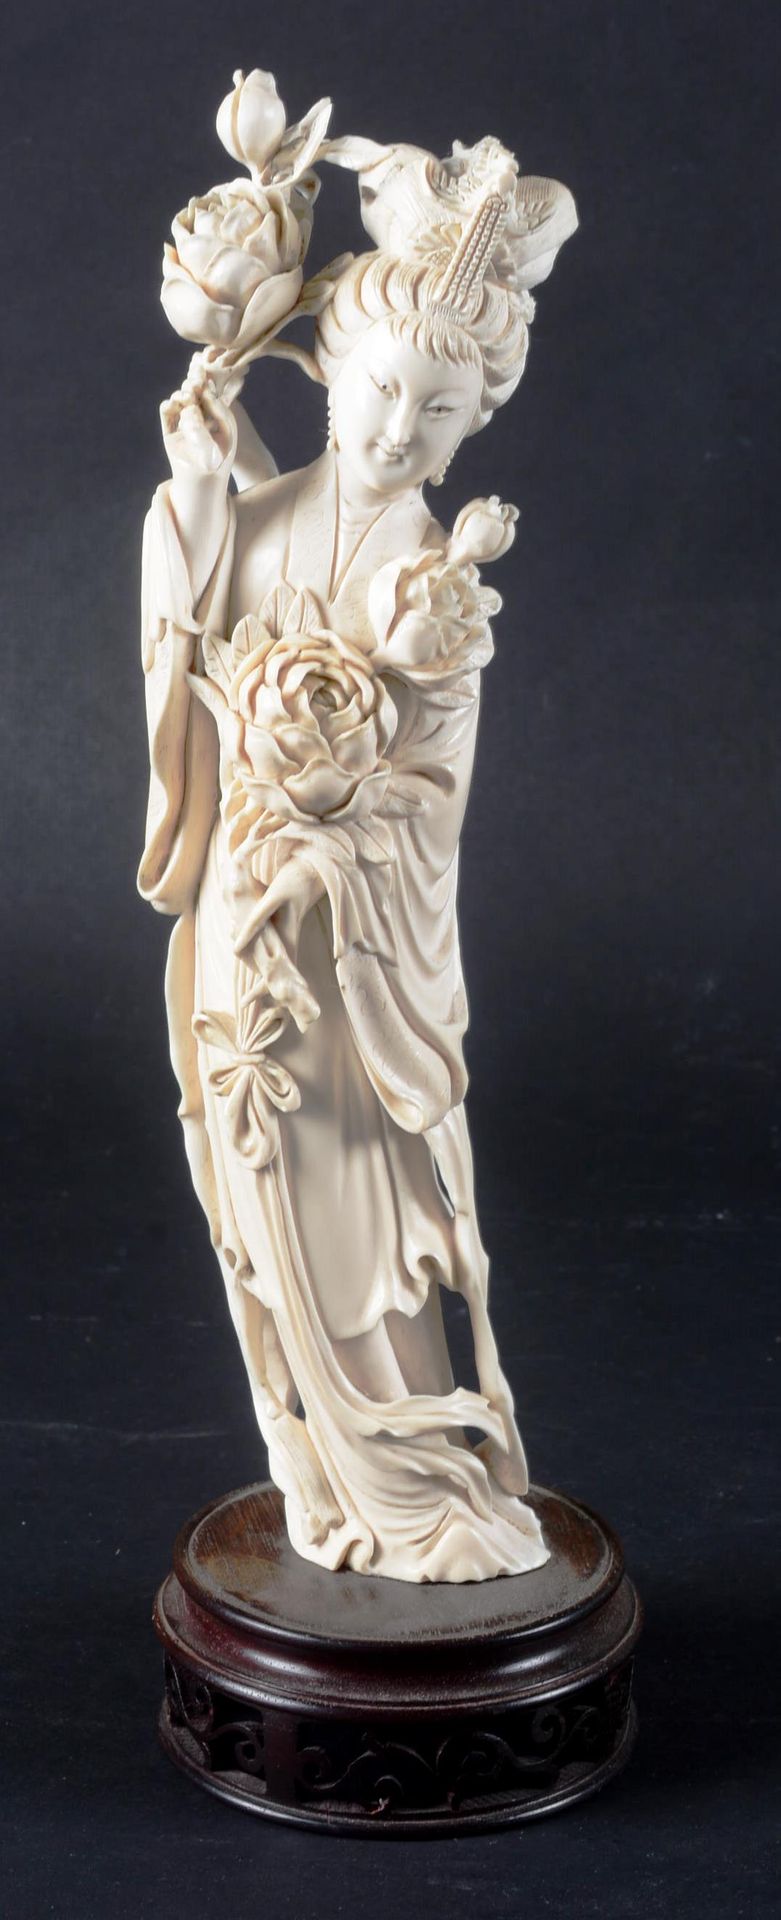 Grande Guanyin en ivoire sculpté CHINA.

Große Guanyin aus Elfenbein, geschnitzt&hellip;